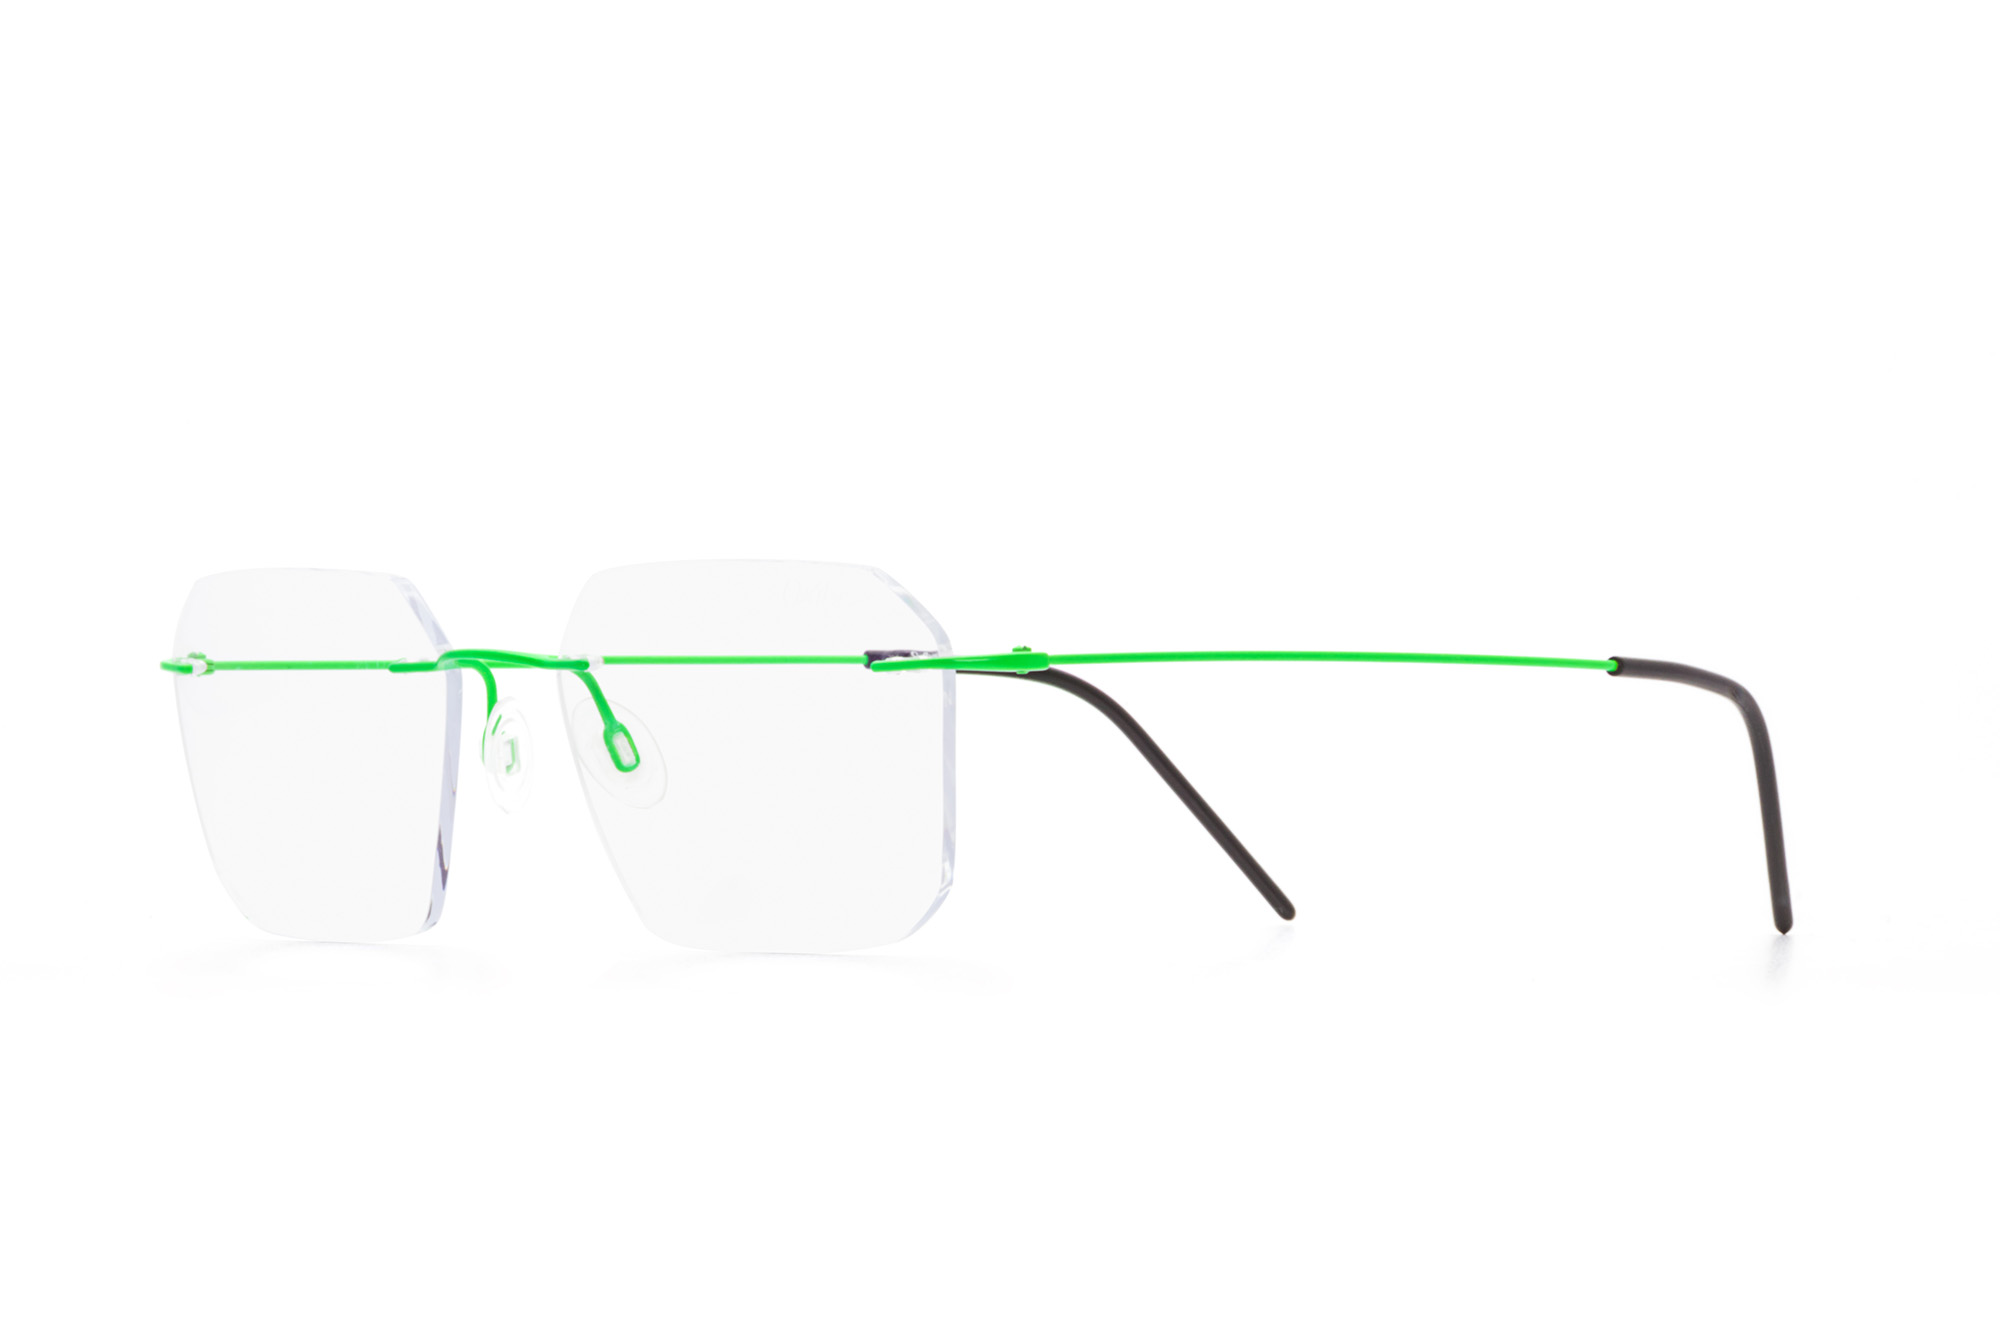 Oxibis Zef ZP7C12 53 orta ekartman neon yeşil renkli altıgen ve dikdörtgen model çerçevesiz numaralı unisex optik gözlük çerçevesi